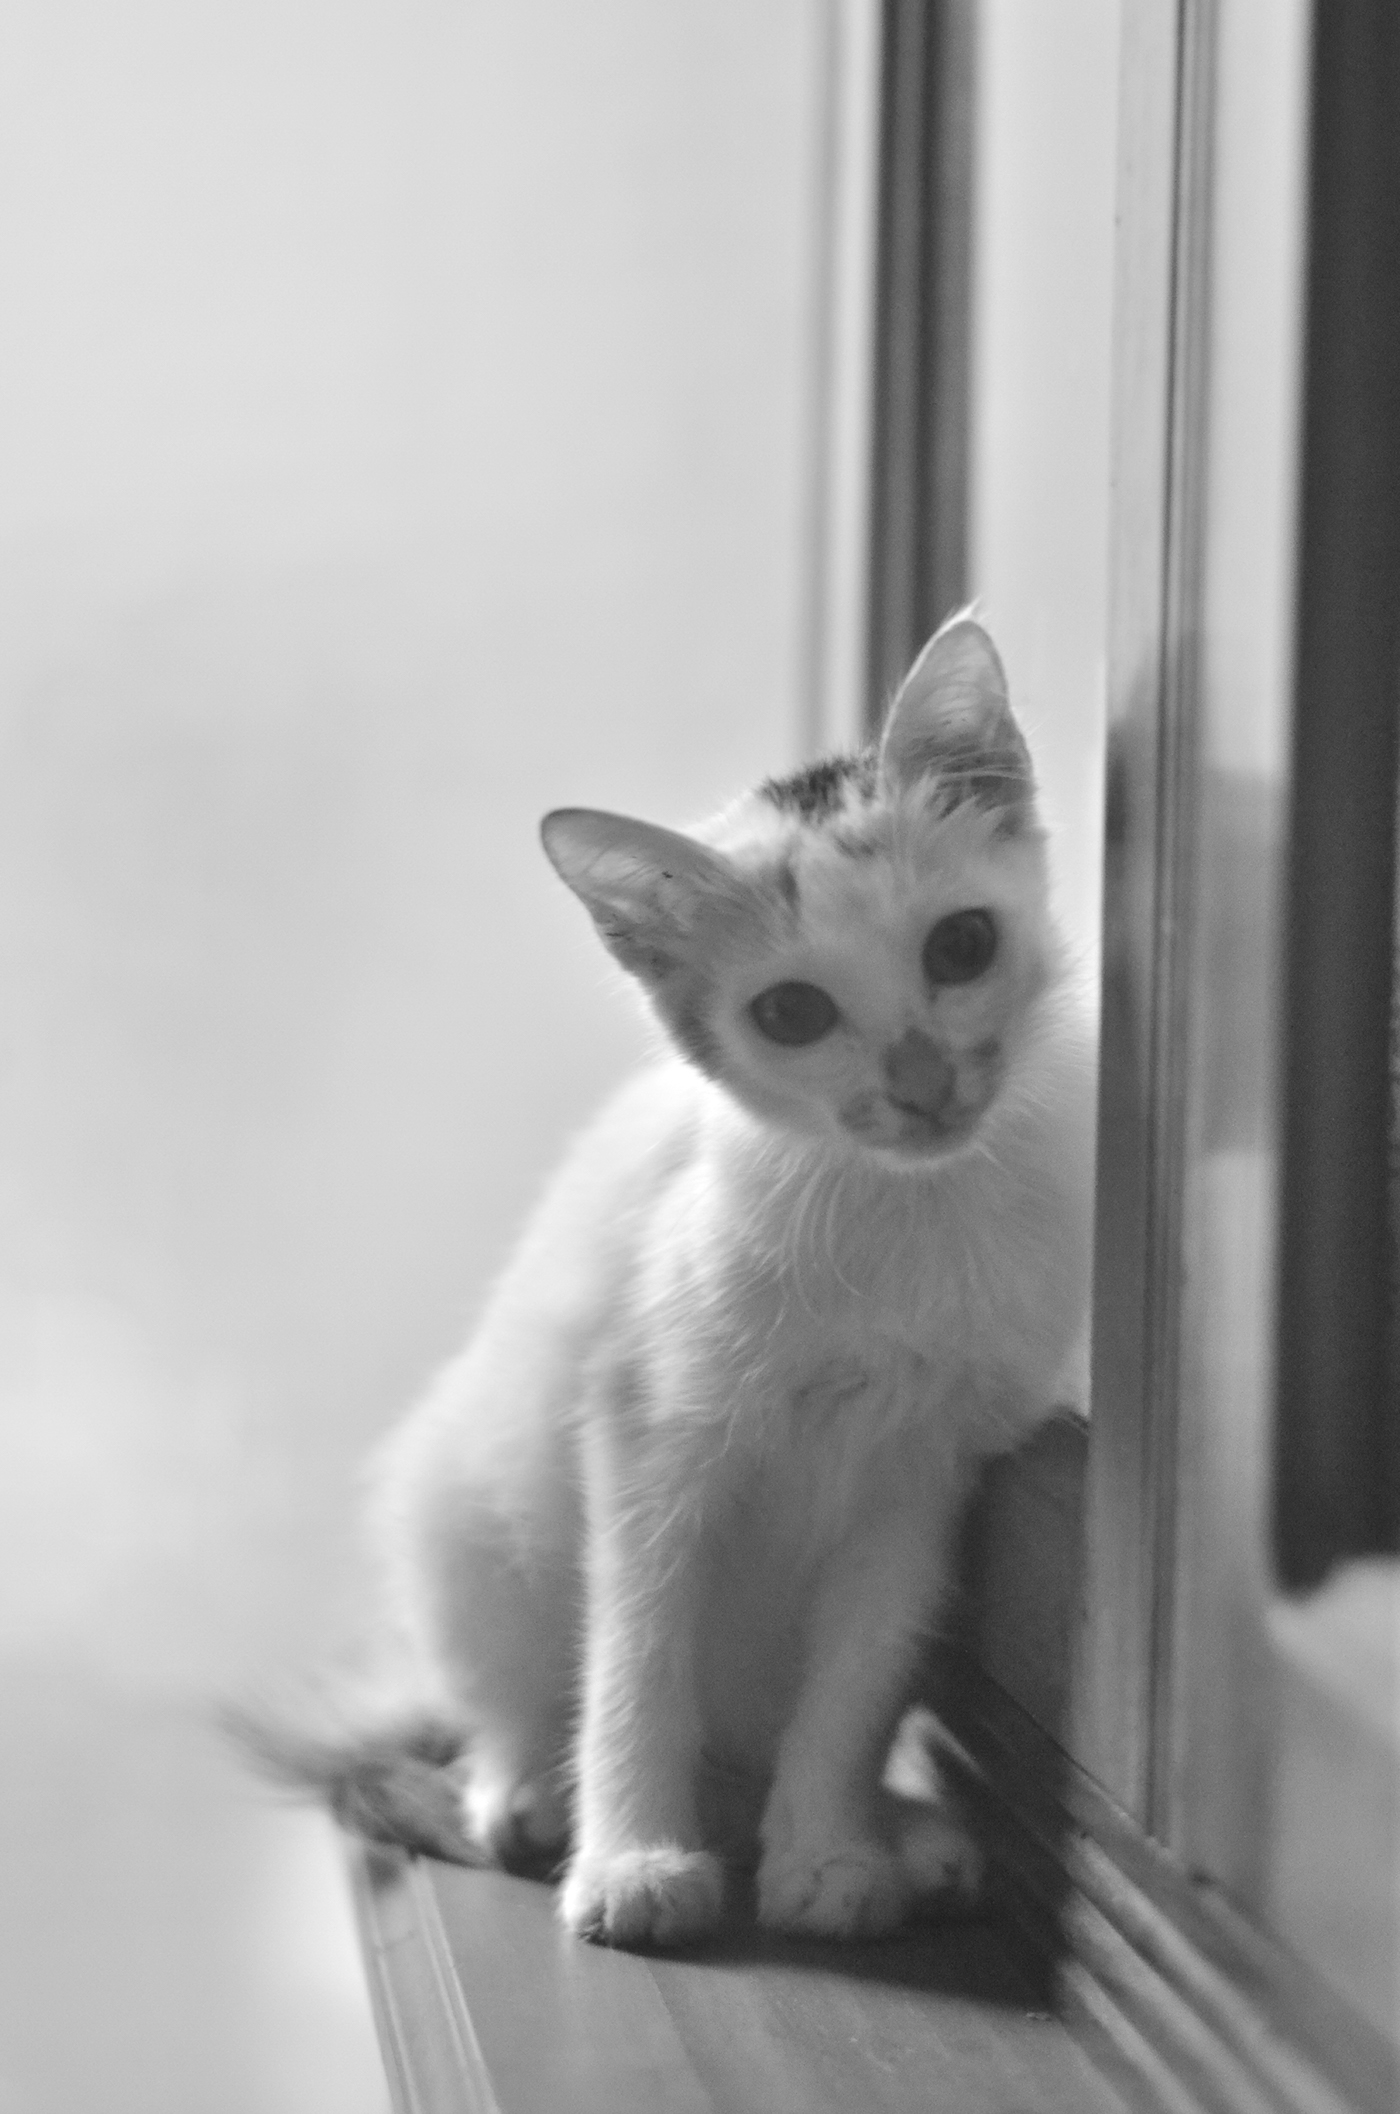 Cat catportait Photography  indoorphotography glamourportait photos